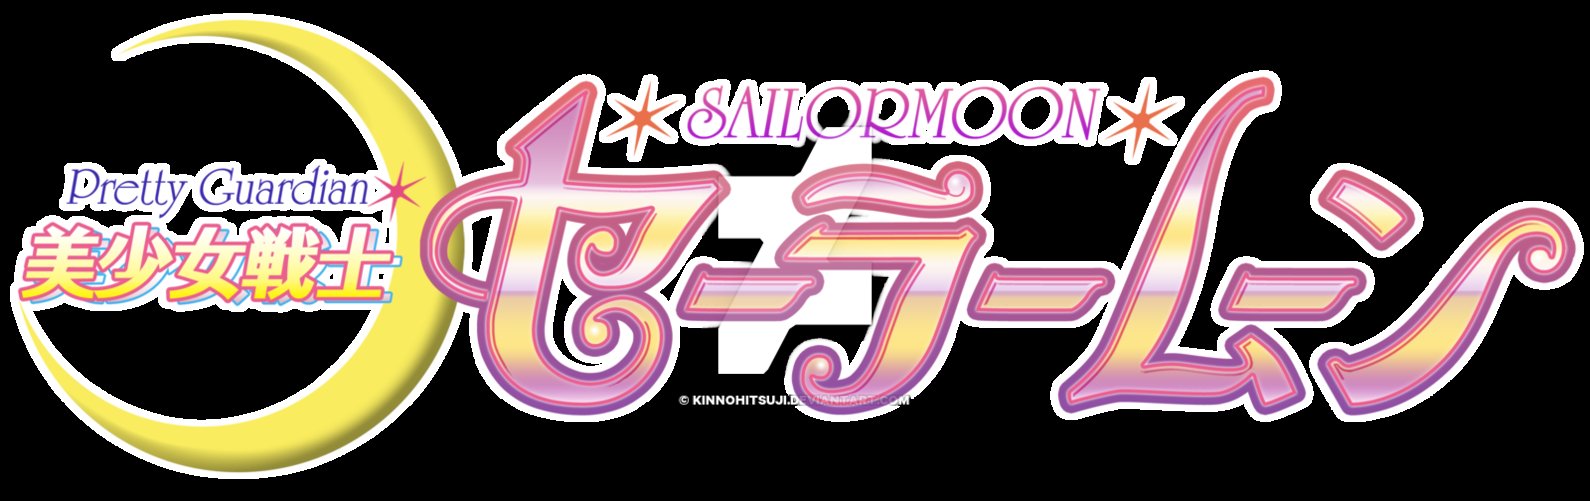 PrettyGuardian SailorMoon